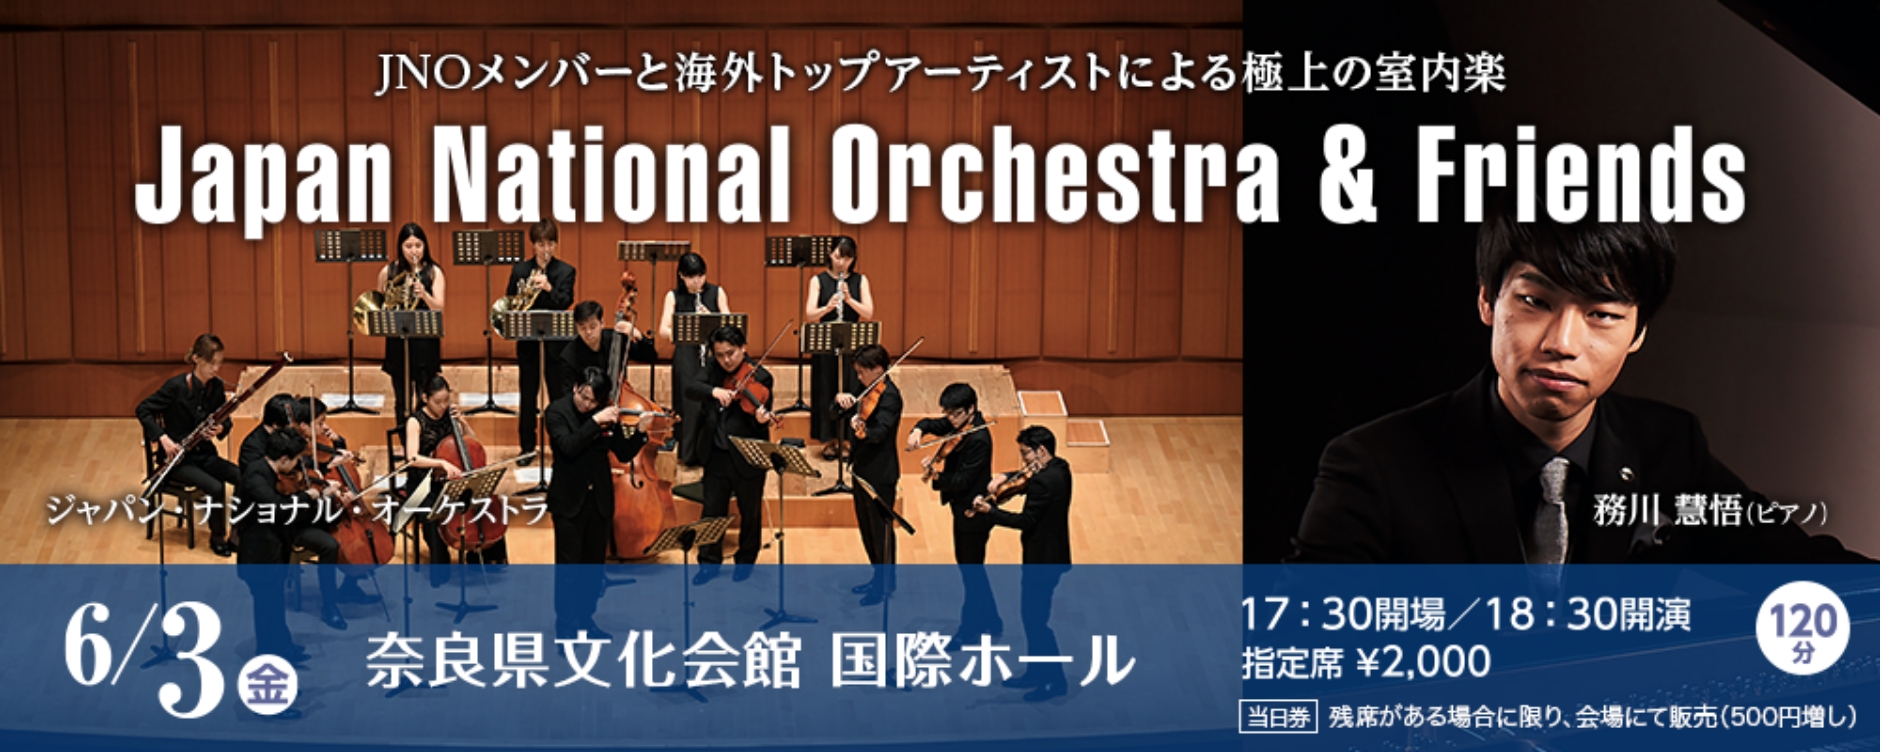 「JNOメンバーと海外トップアーティストによる極上の室内楽」ジャパン・ナショナル・オーケストラ